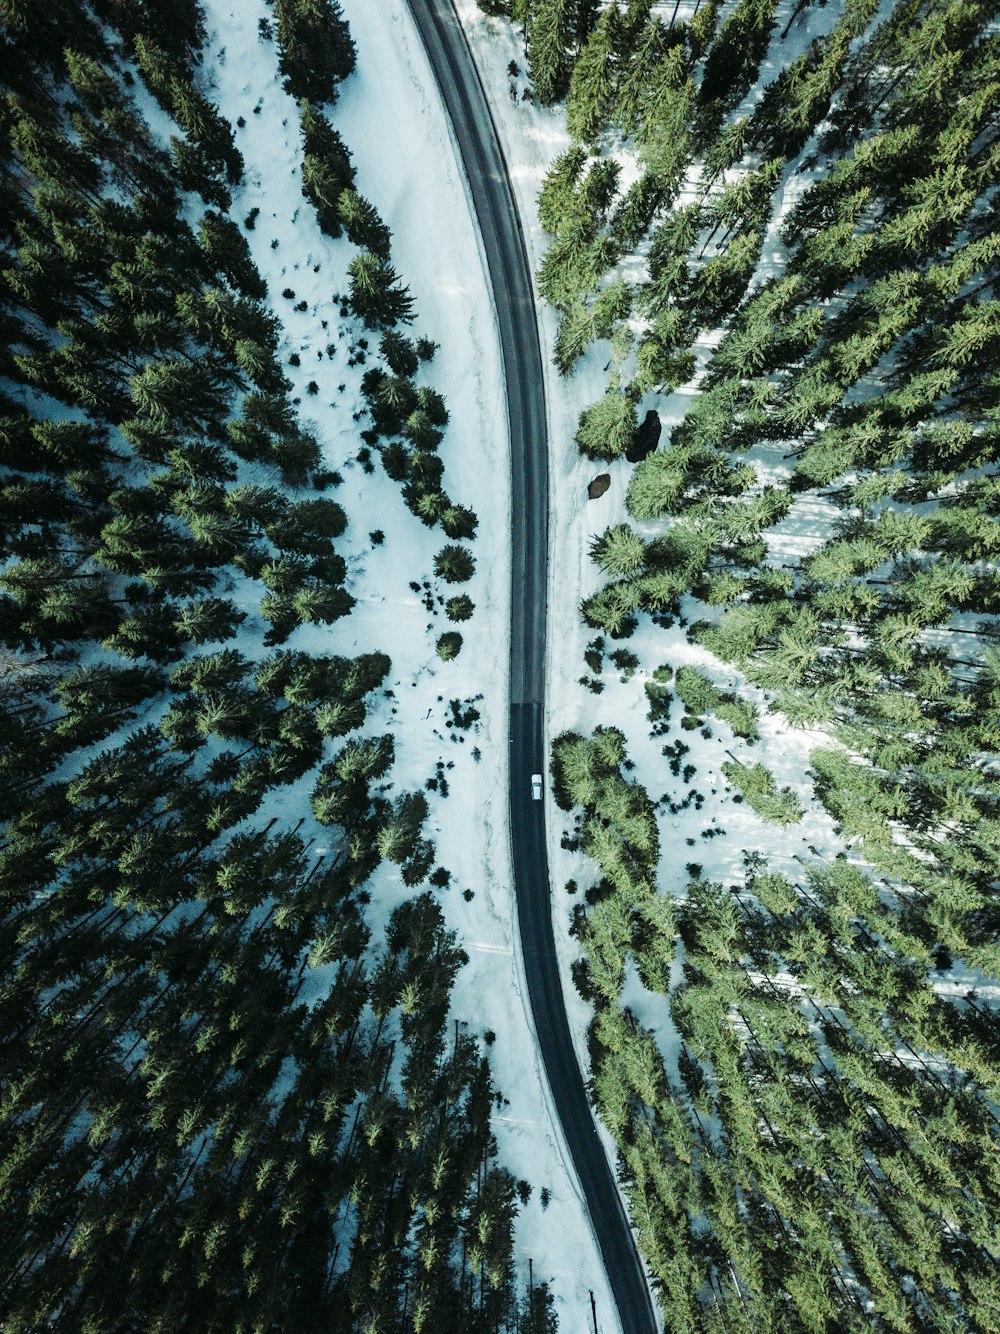 Veículo de fotografia aérea em estrada cercada por árvores